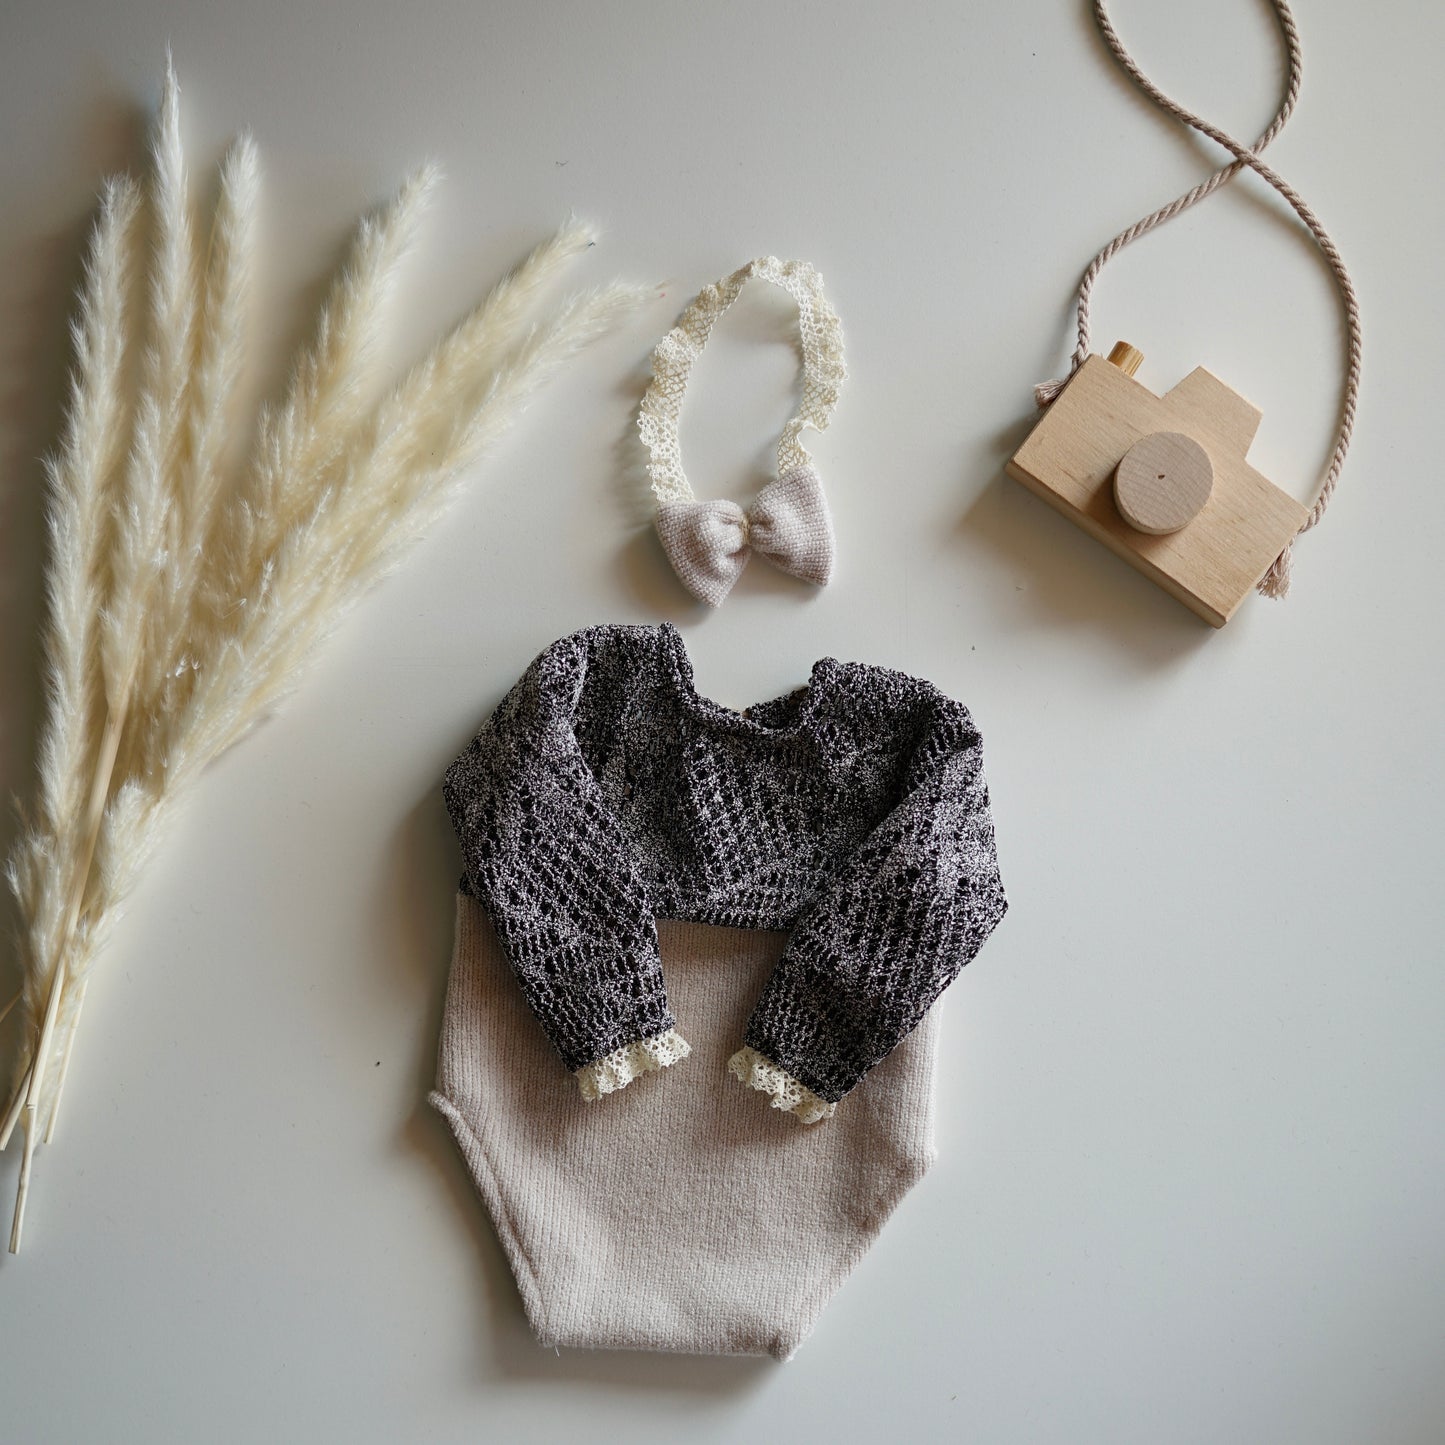 Popy Neugeborenen-Fotografie-Requisiten-Outfit für Mädchen